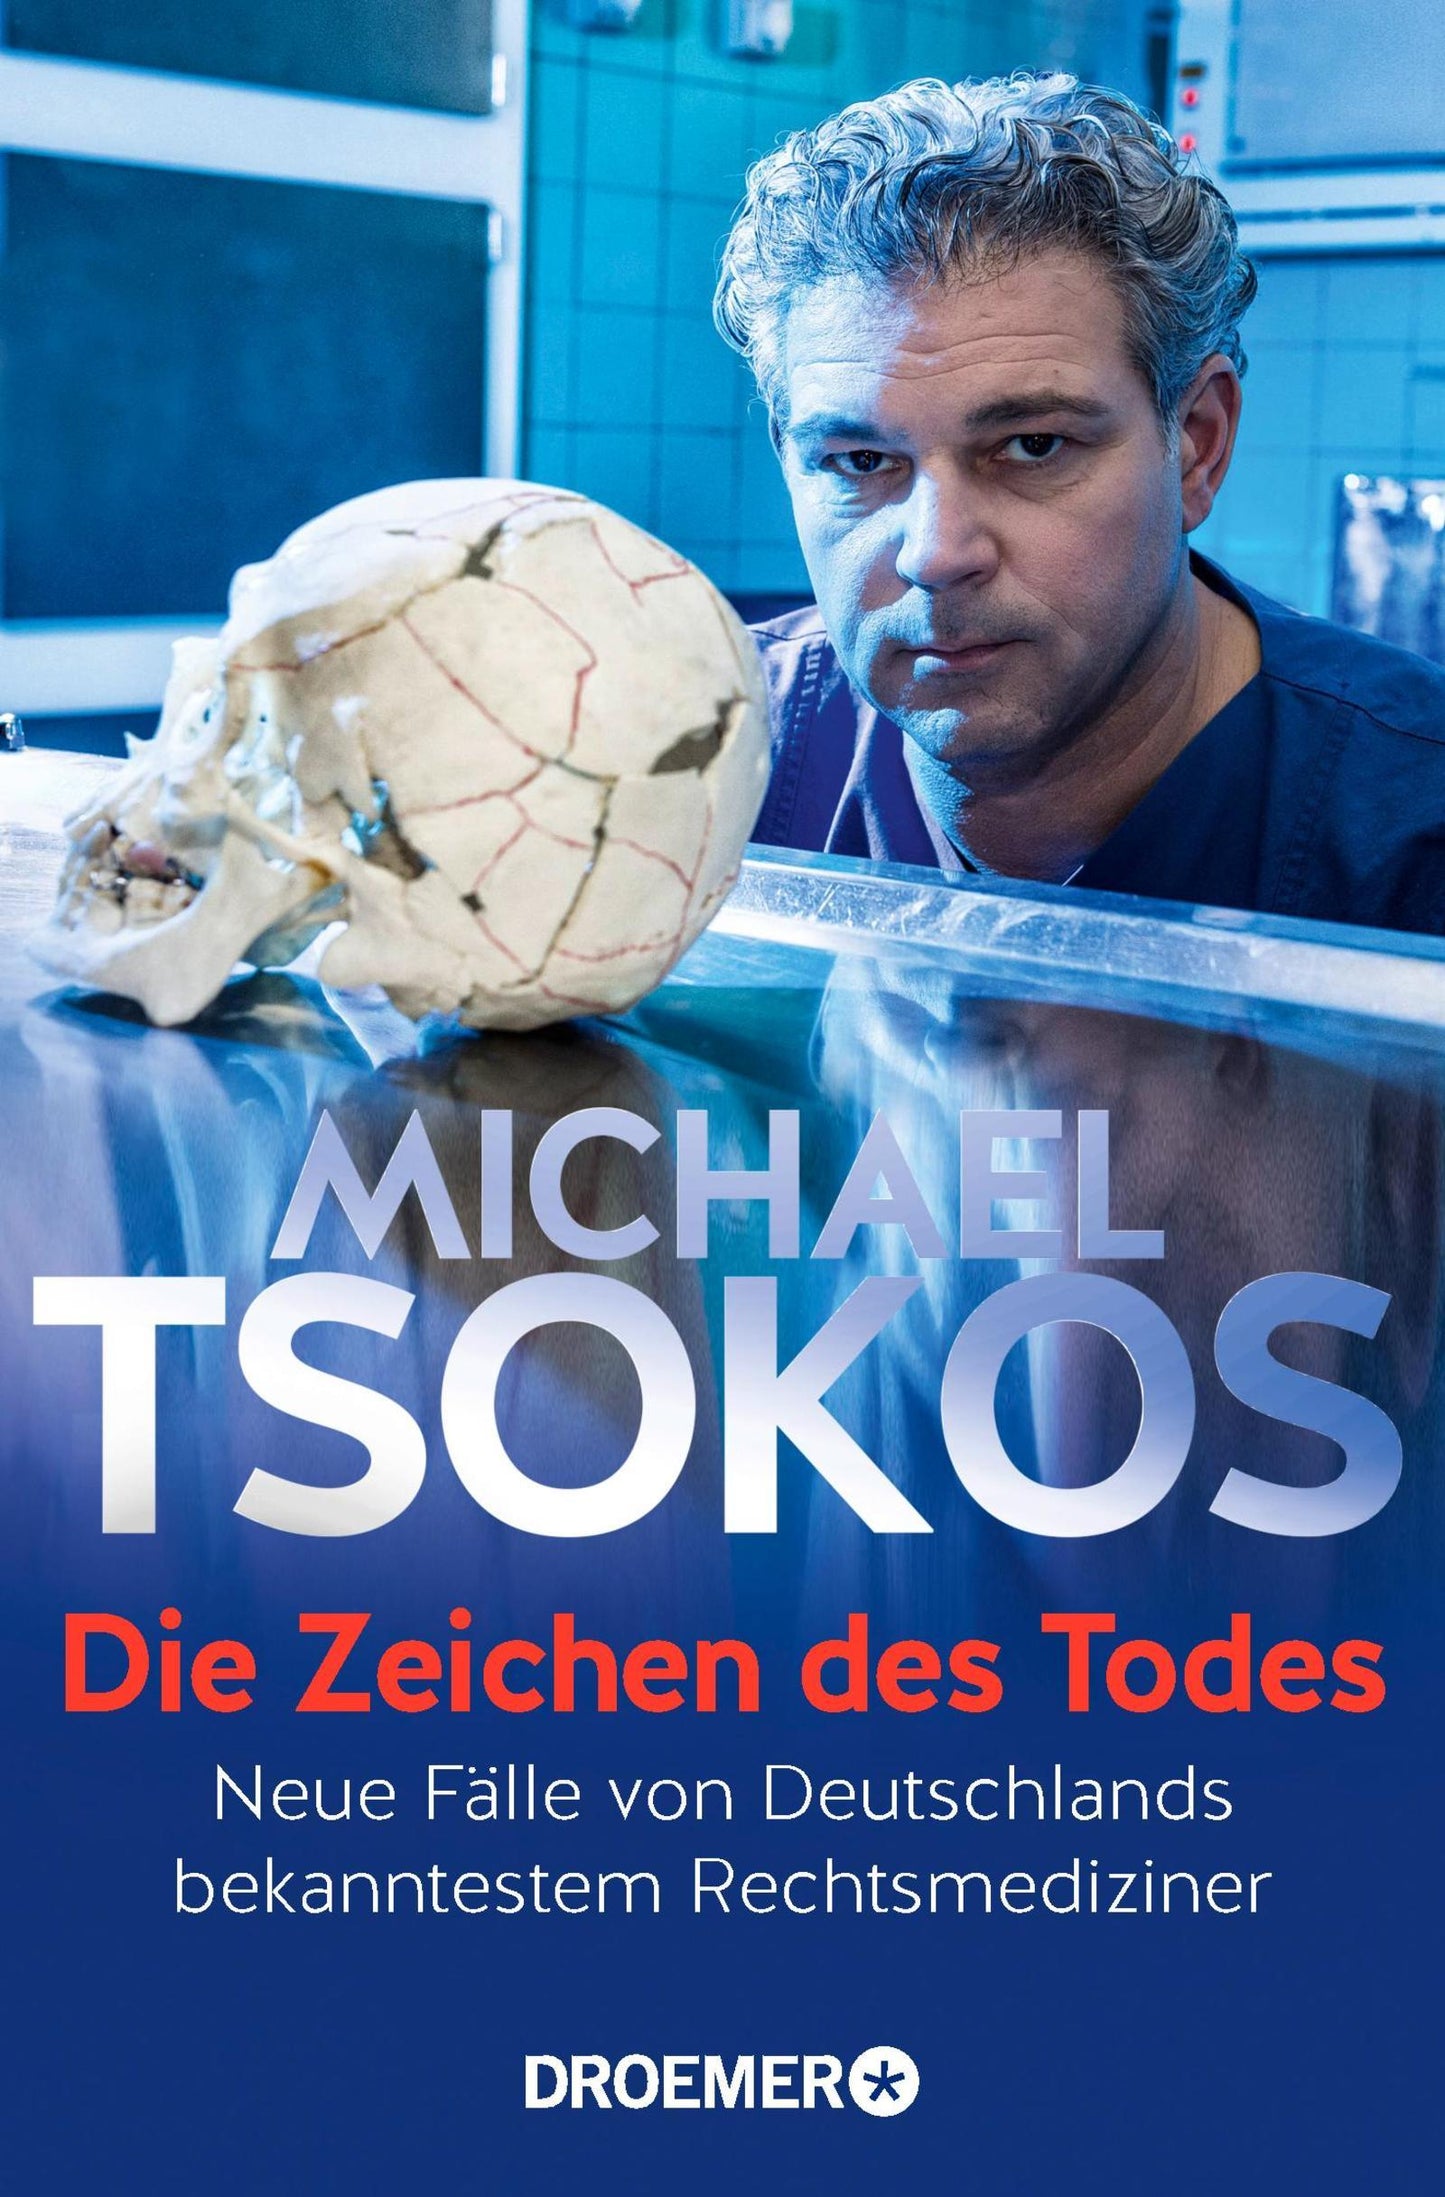 Die Zeichen des Todes - Dr. Michael Tsokos - Der Kiosk - Offiziell